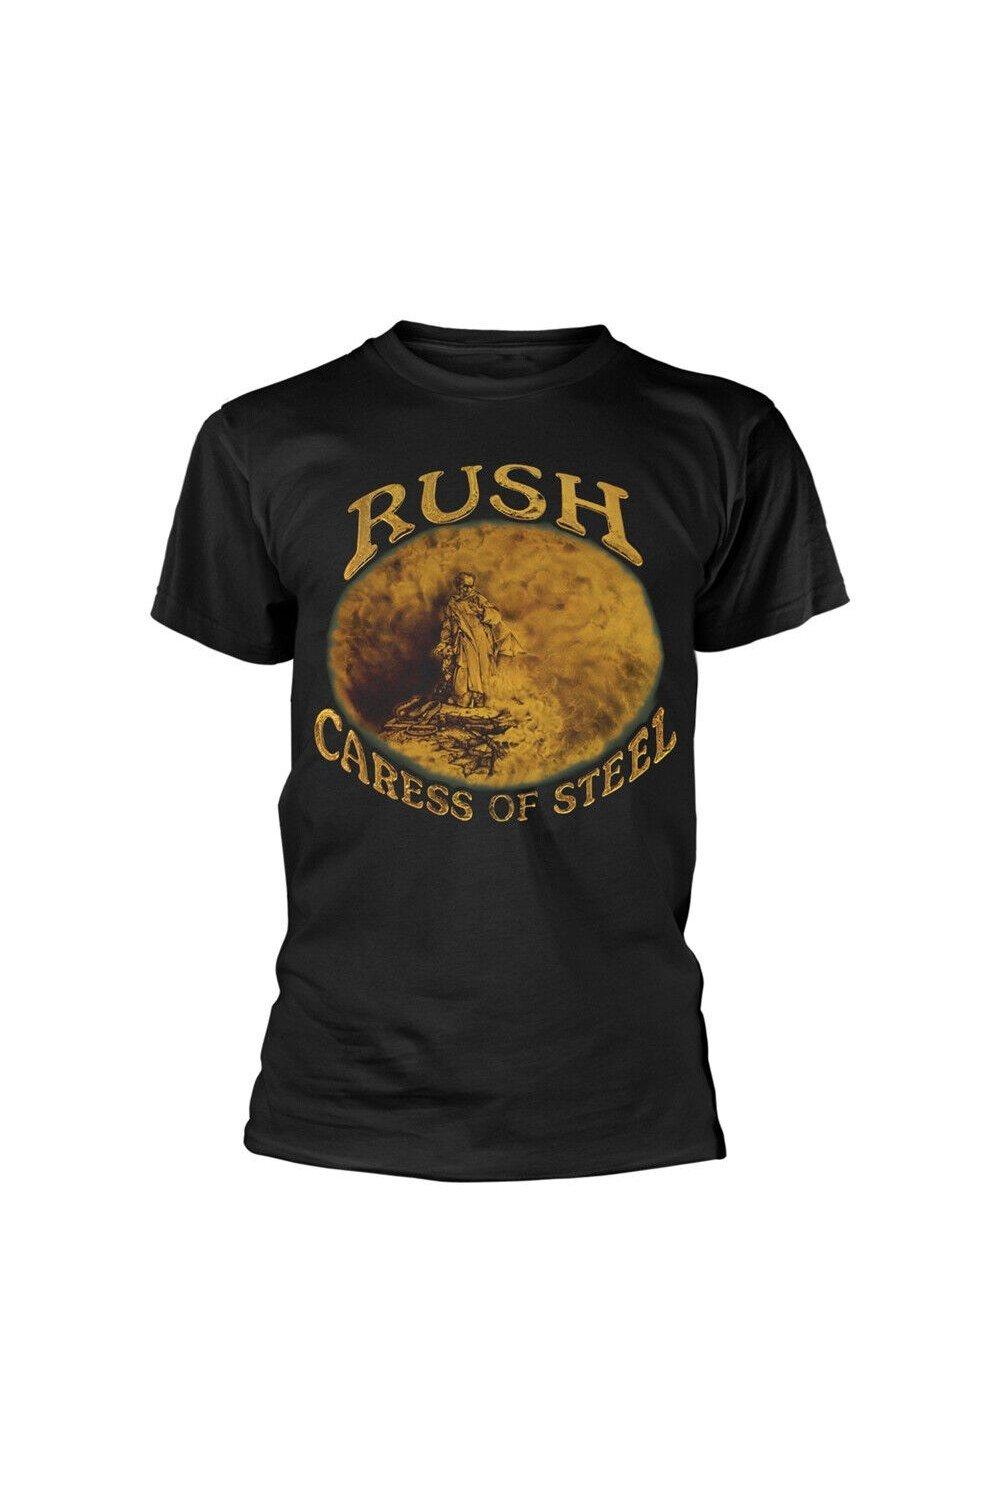 Хлопковая футболка Caress Of Steel Rush, черный компакт диски mercury rush caress of steel rem cd